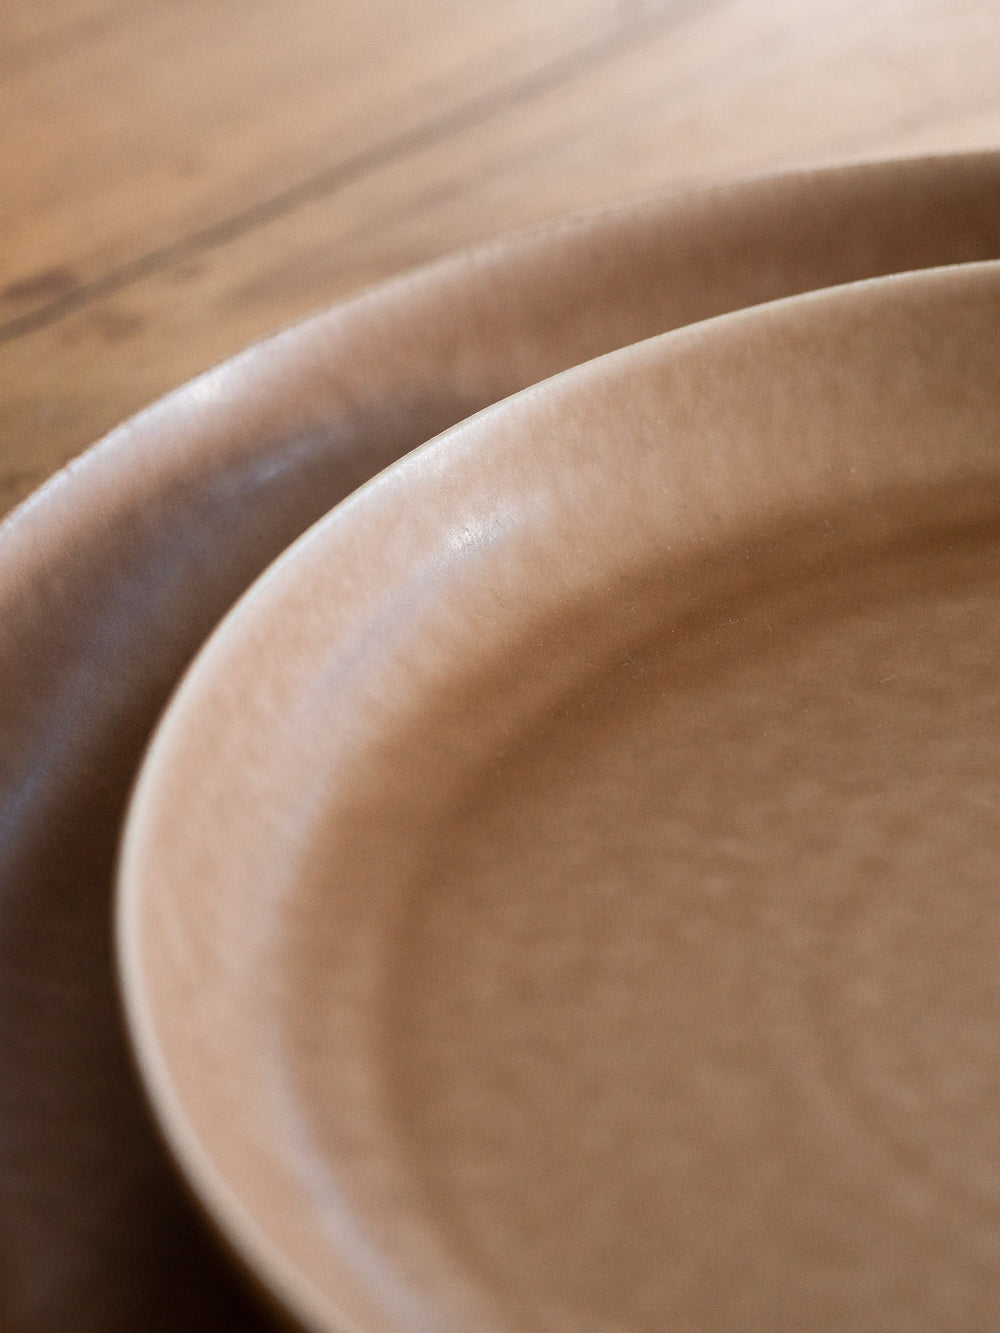 ReIRABO Dinner Plate – Warm Soil Brown